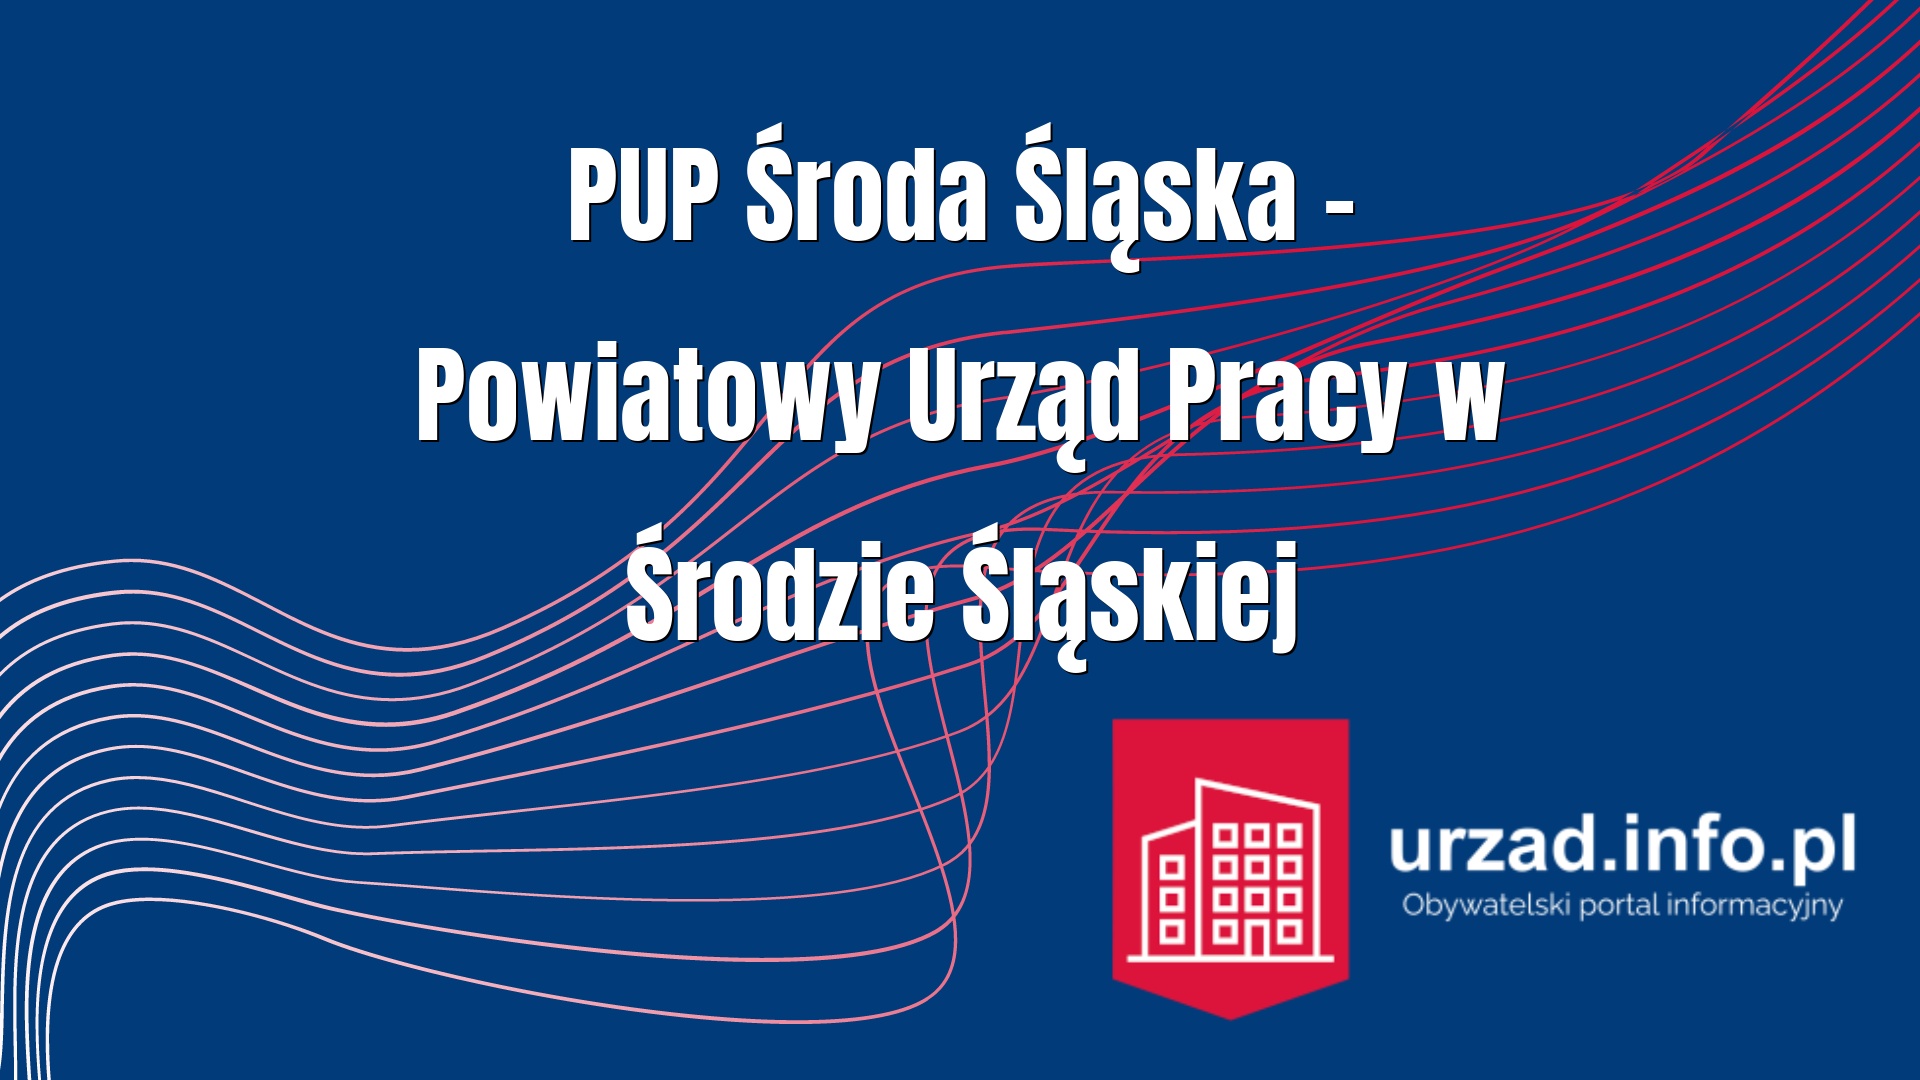 PUP Środa Śląska – Powiatowy Urząd Pracy w Środzie Śląskiej